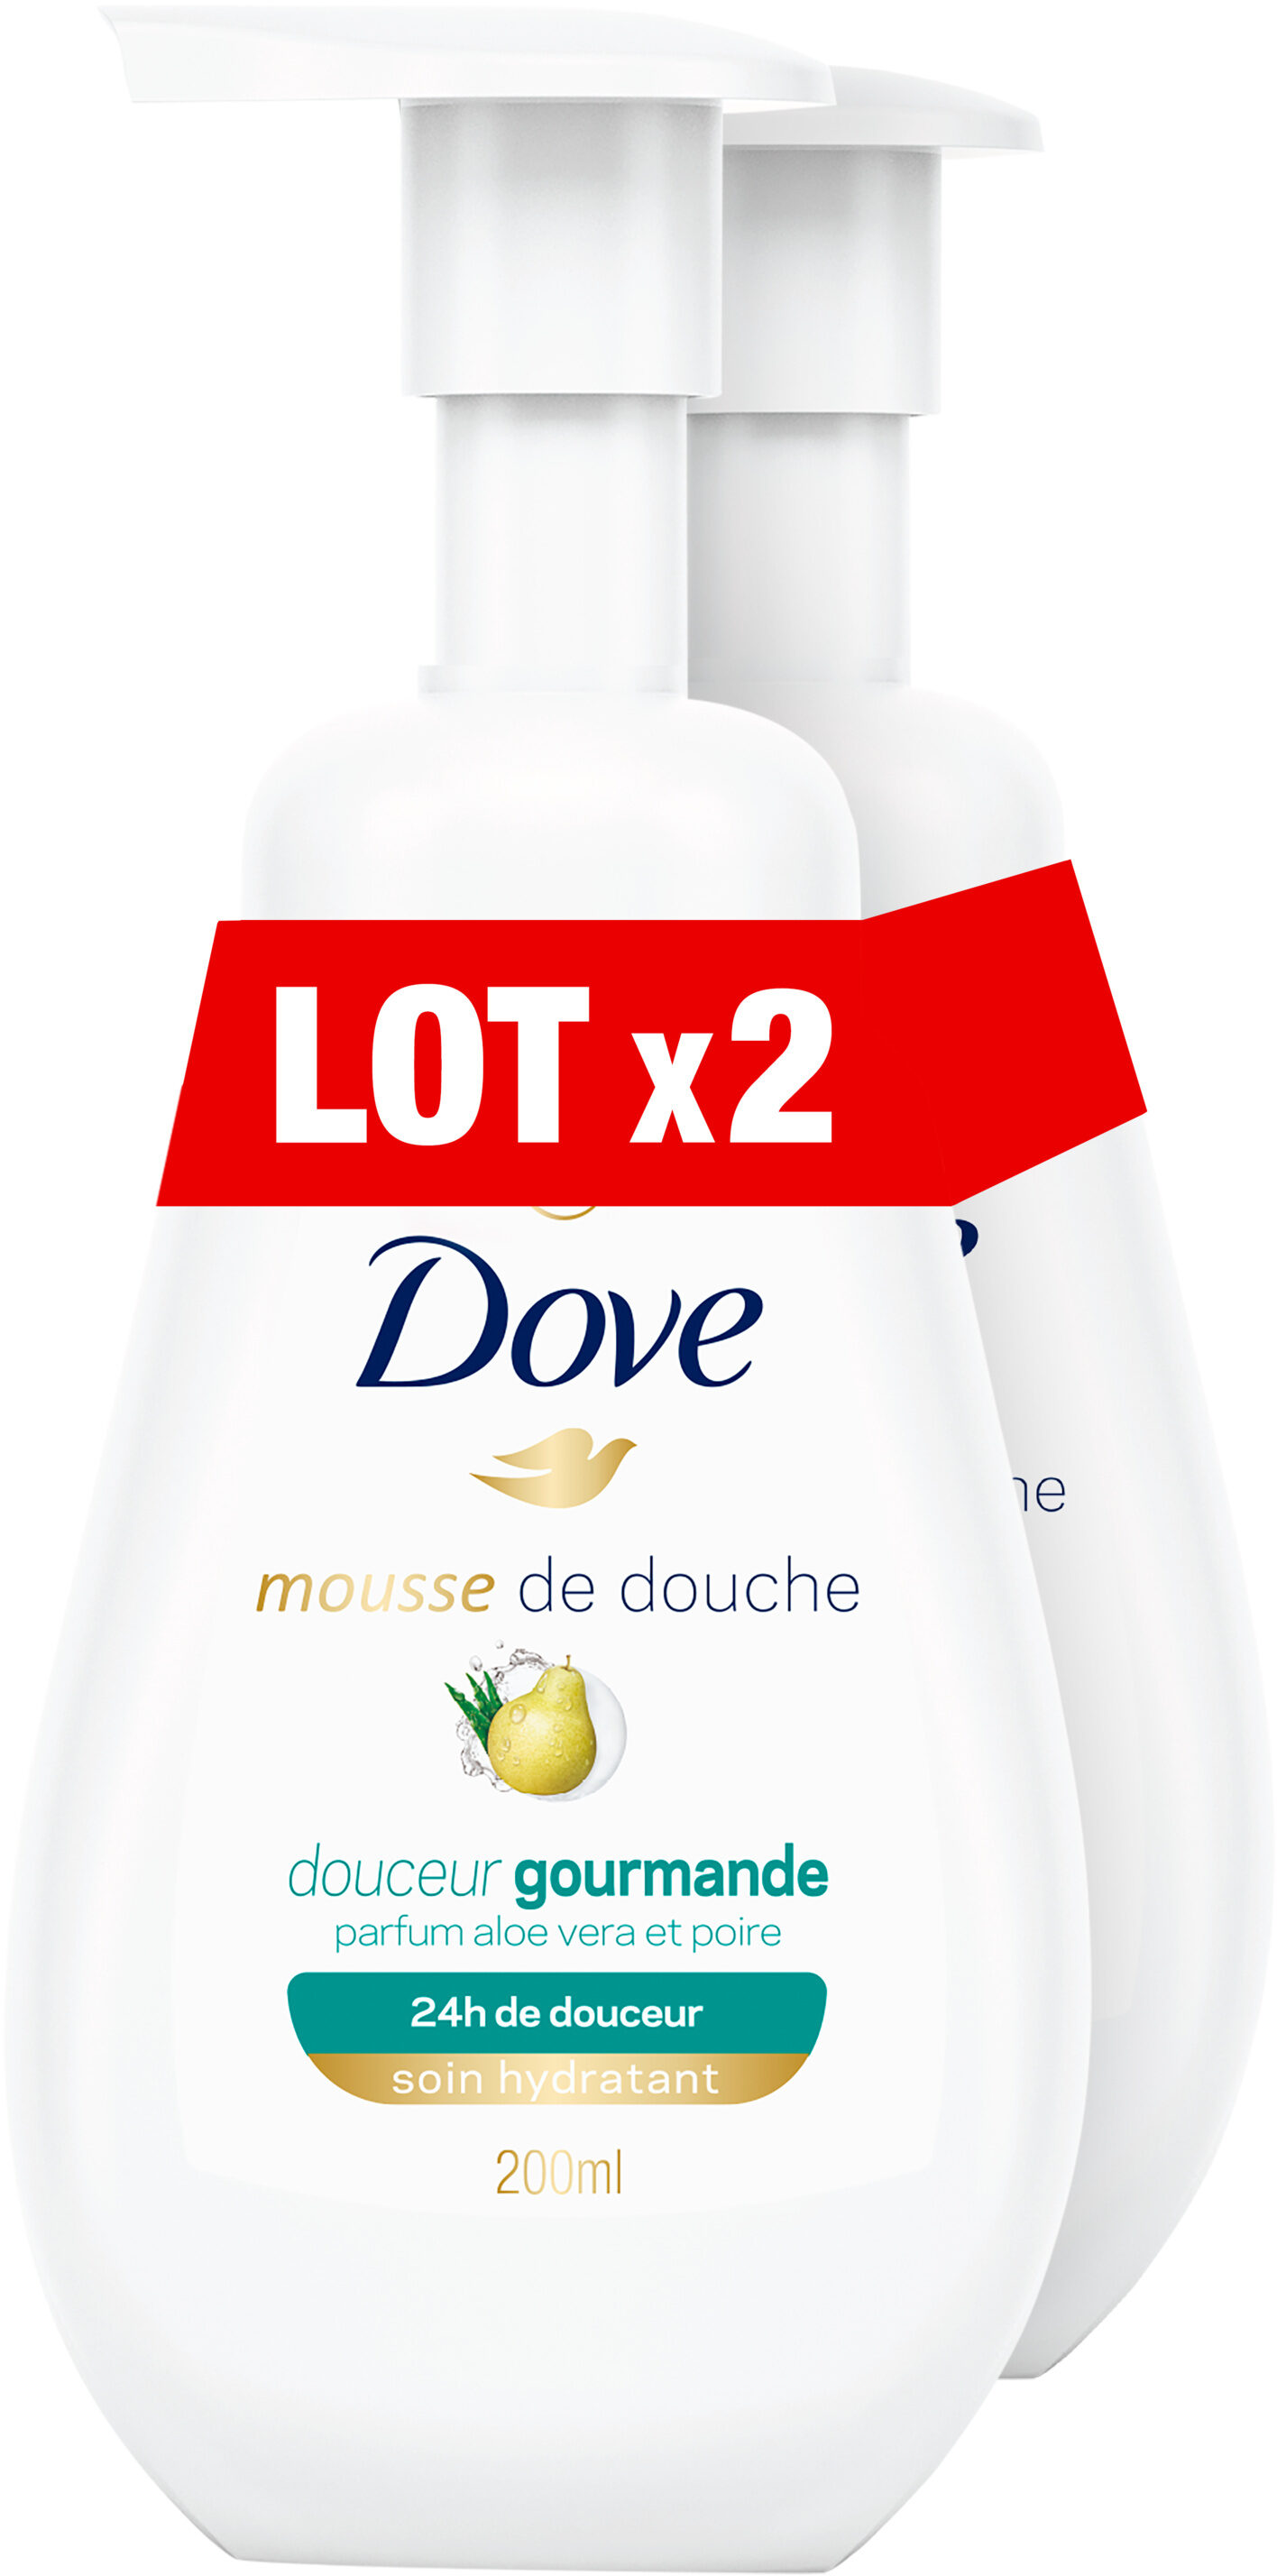 Dove Gel Douche Mousse Douceur Gourmande Lot - Produkt - fr